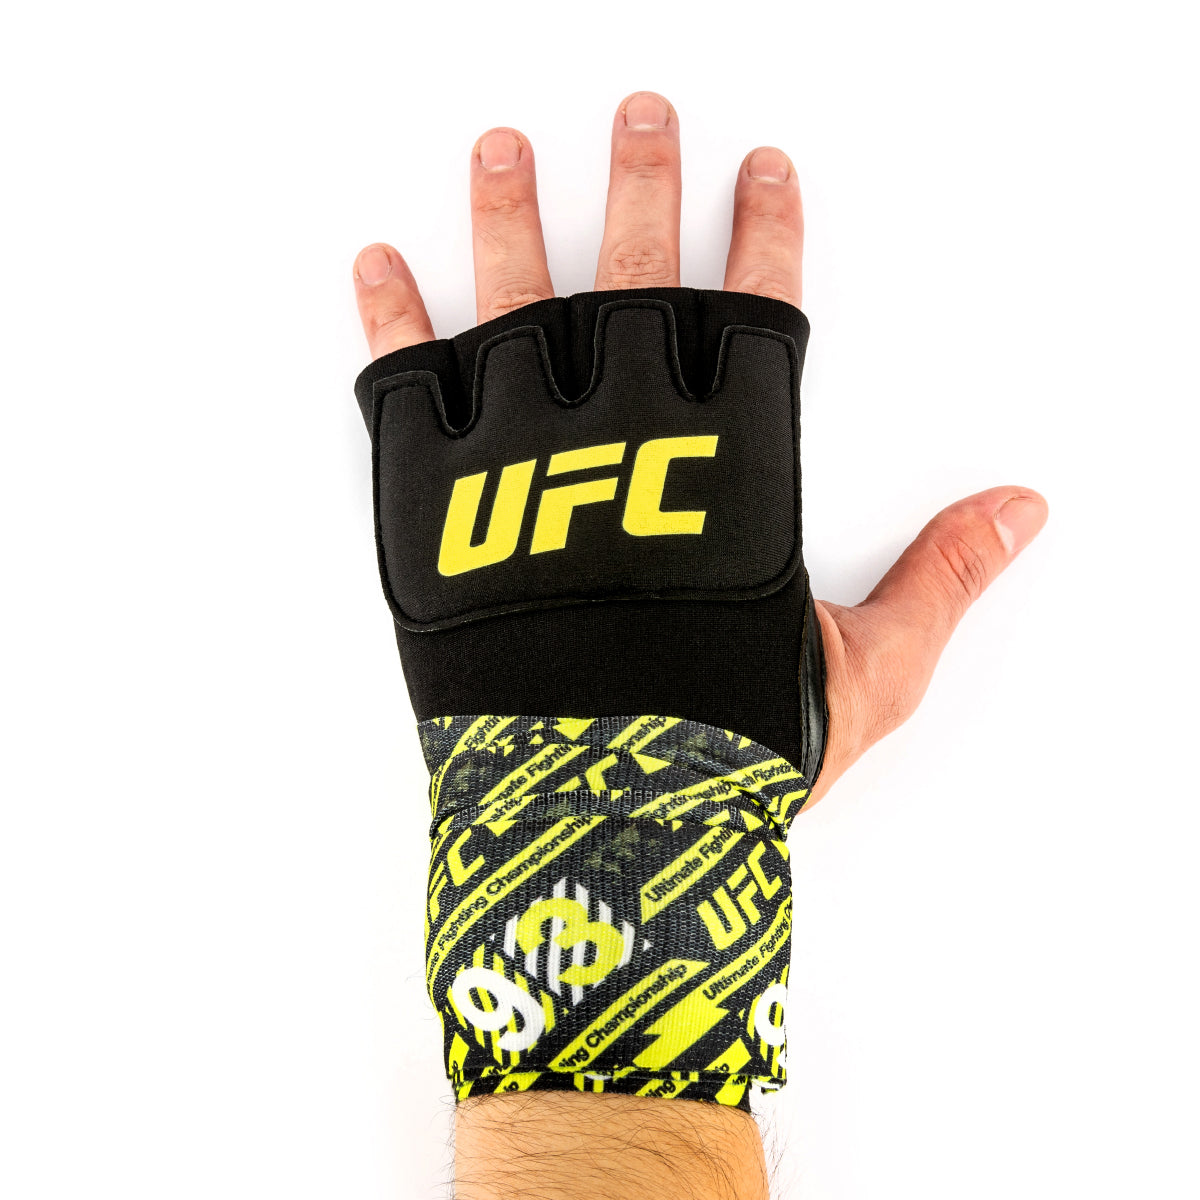 UFC Gel Glove Wraps